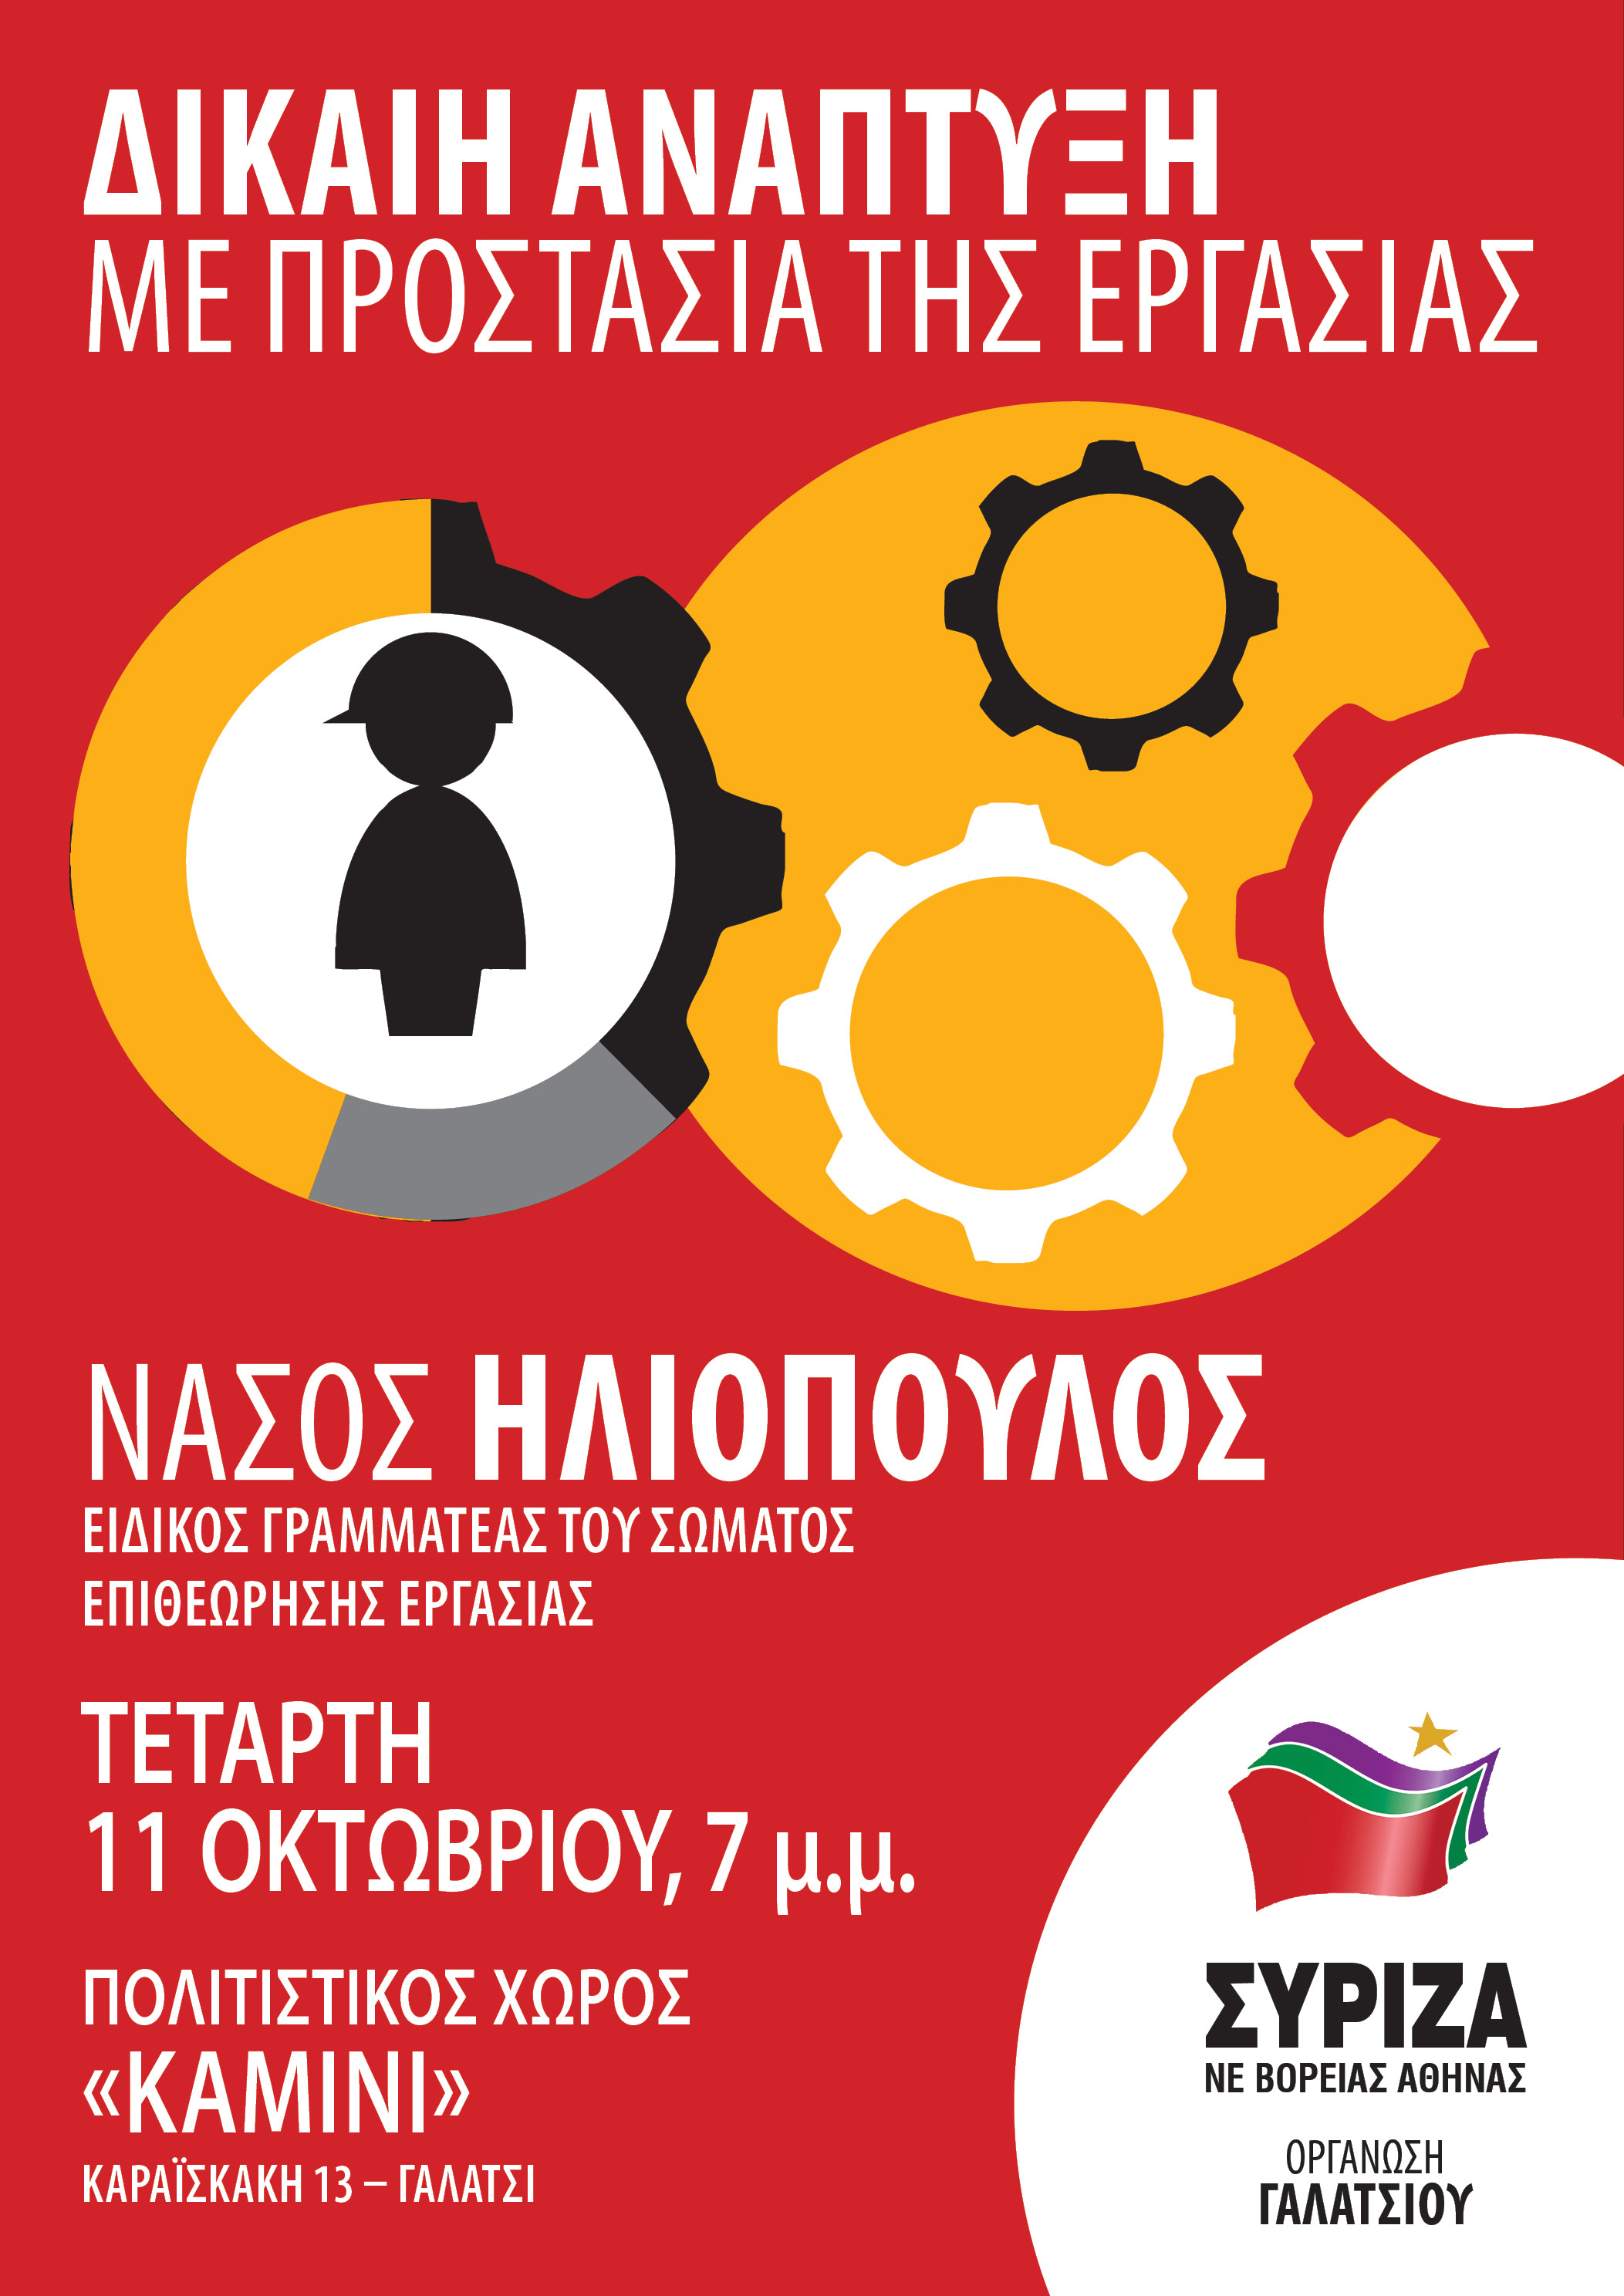 ΣΥΡΙΖΑ - Ν.Ε. Βόρειας Αθήνας & Ο.Μ. Γαλατσίου: Πολιτική Συζήτηση – Εκδήλωση με θέμα: Δίκαιη ανάπτυξη με προστασία της εργασίας